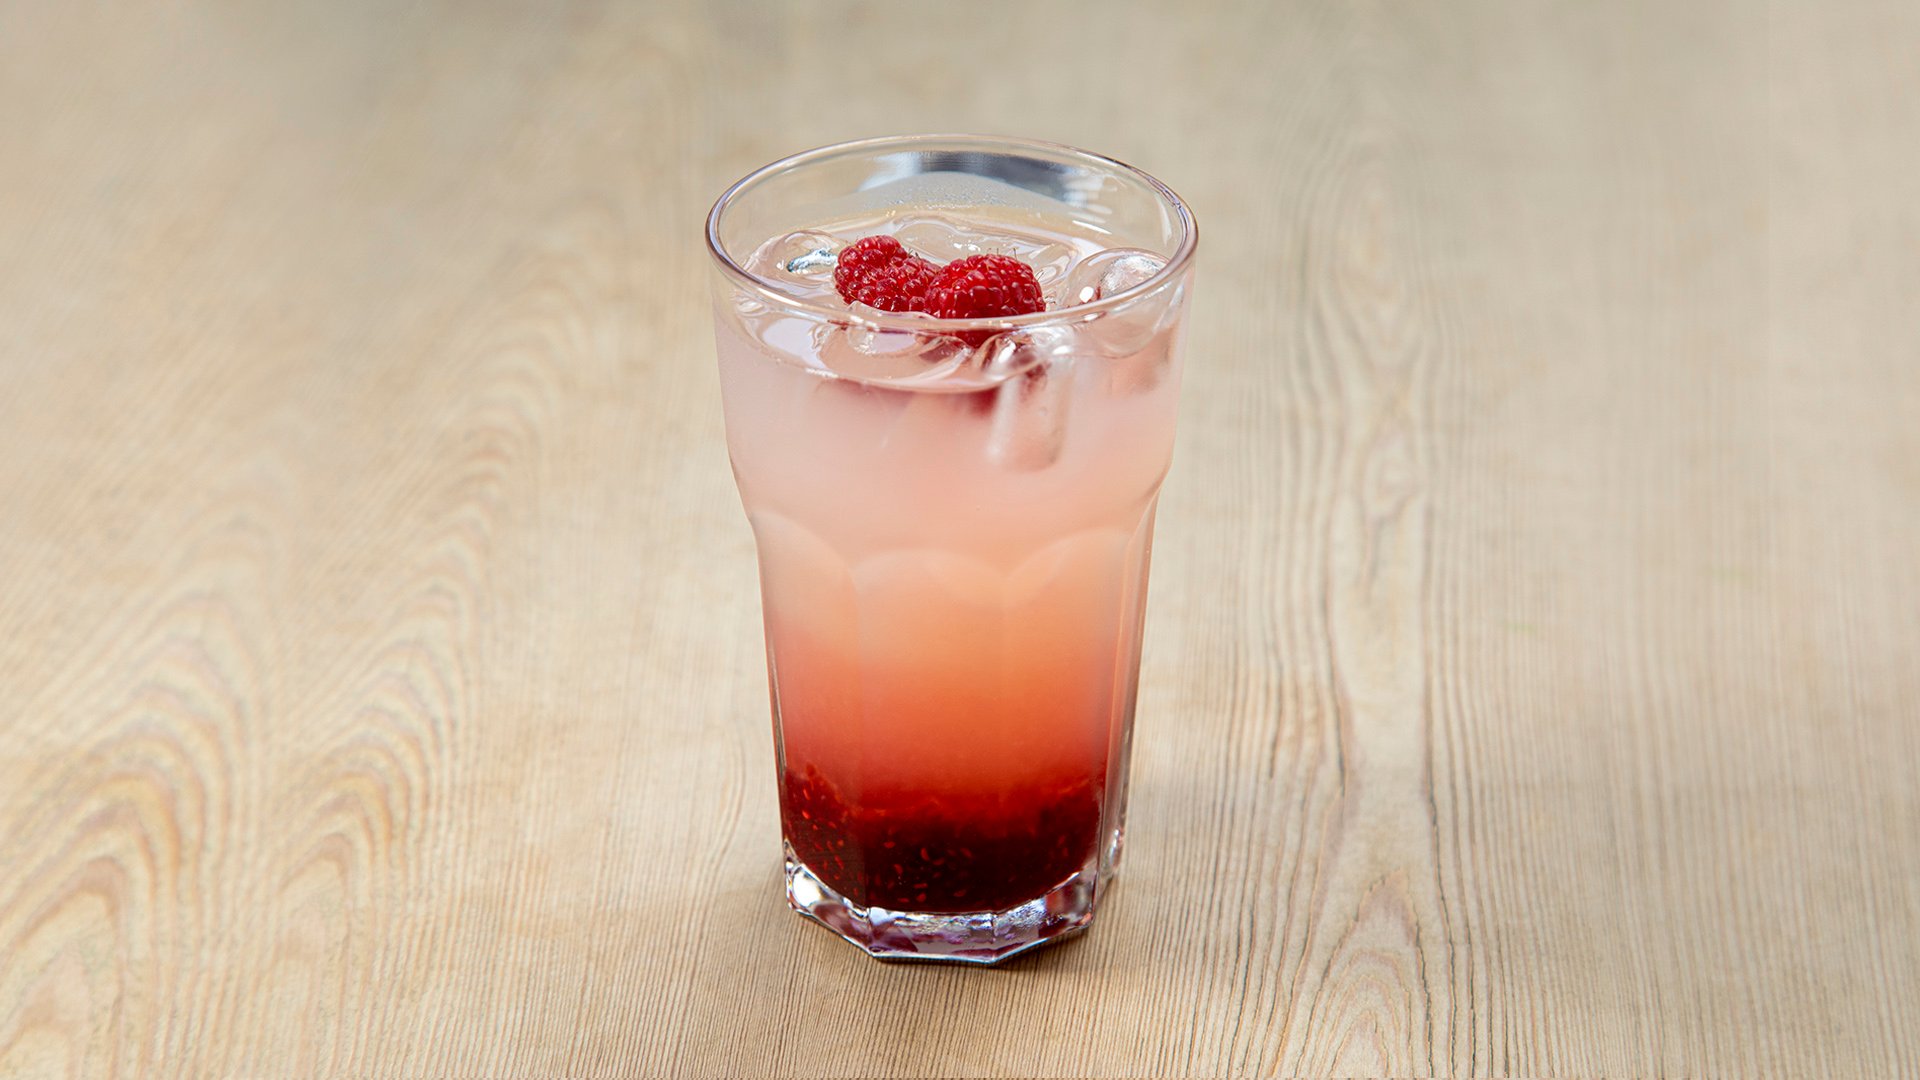 Le Pain Quotidien Raspberry Lemonade